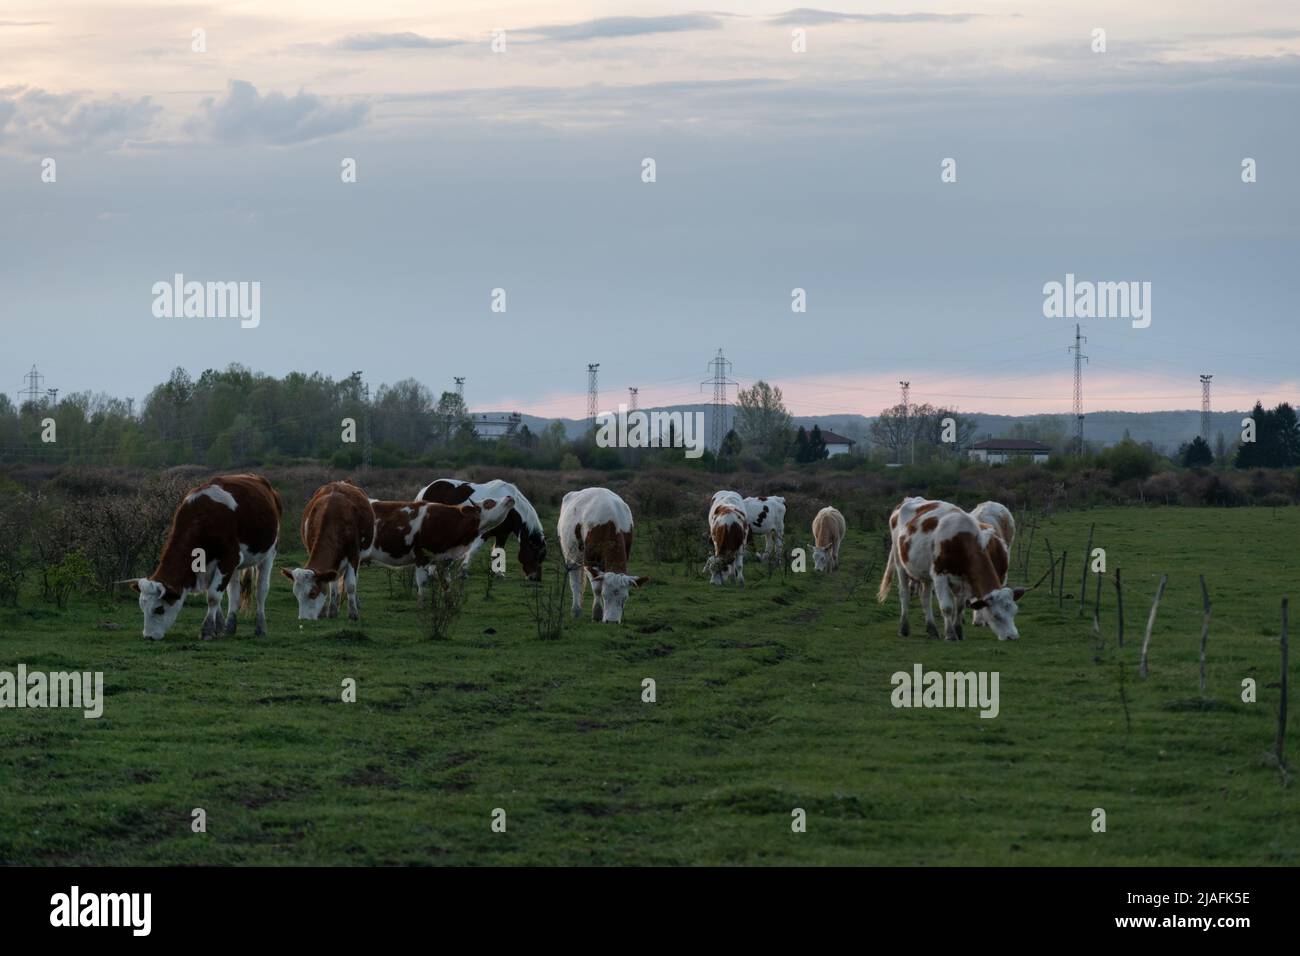 Herde von Kühen, die auf Weiden grasen, mit Kamera, Haustieren in Freilandhaltung und elektrischen Pylonen im Hintergrund während des bewölkten Abends Stockfoto